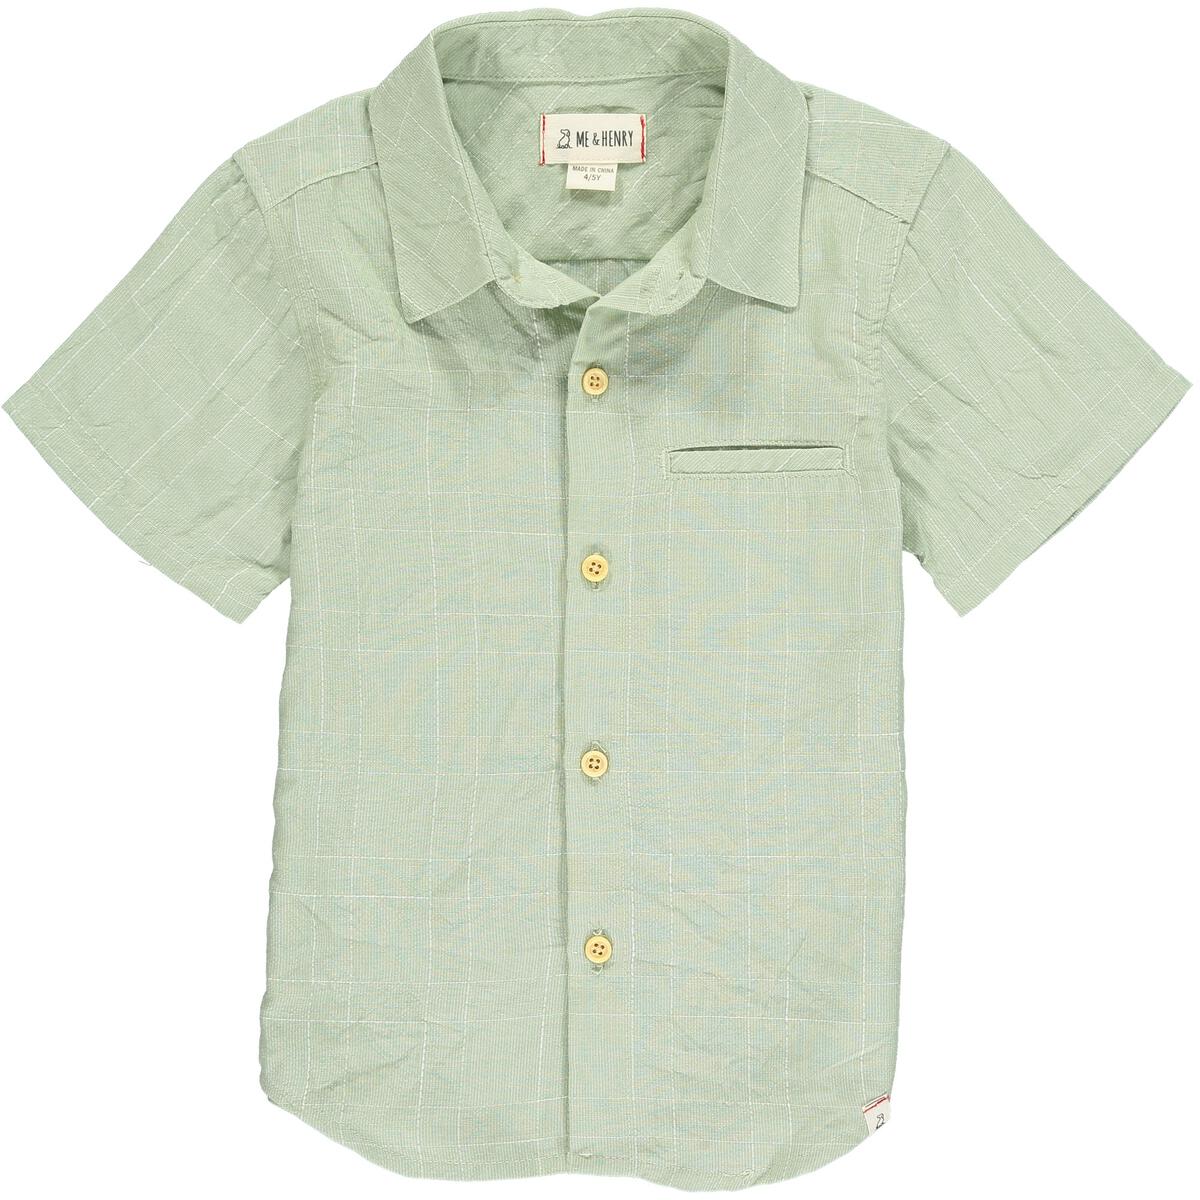 Owen Button-up Shirt - Grass